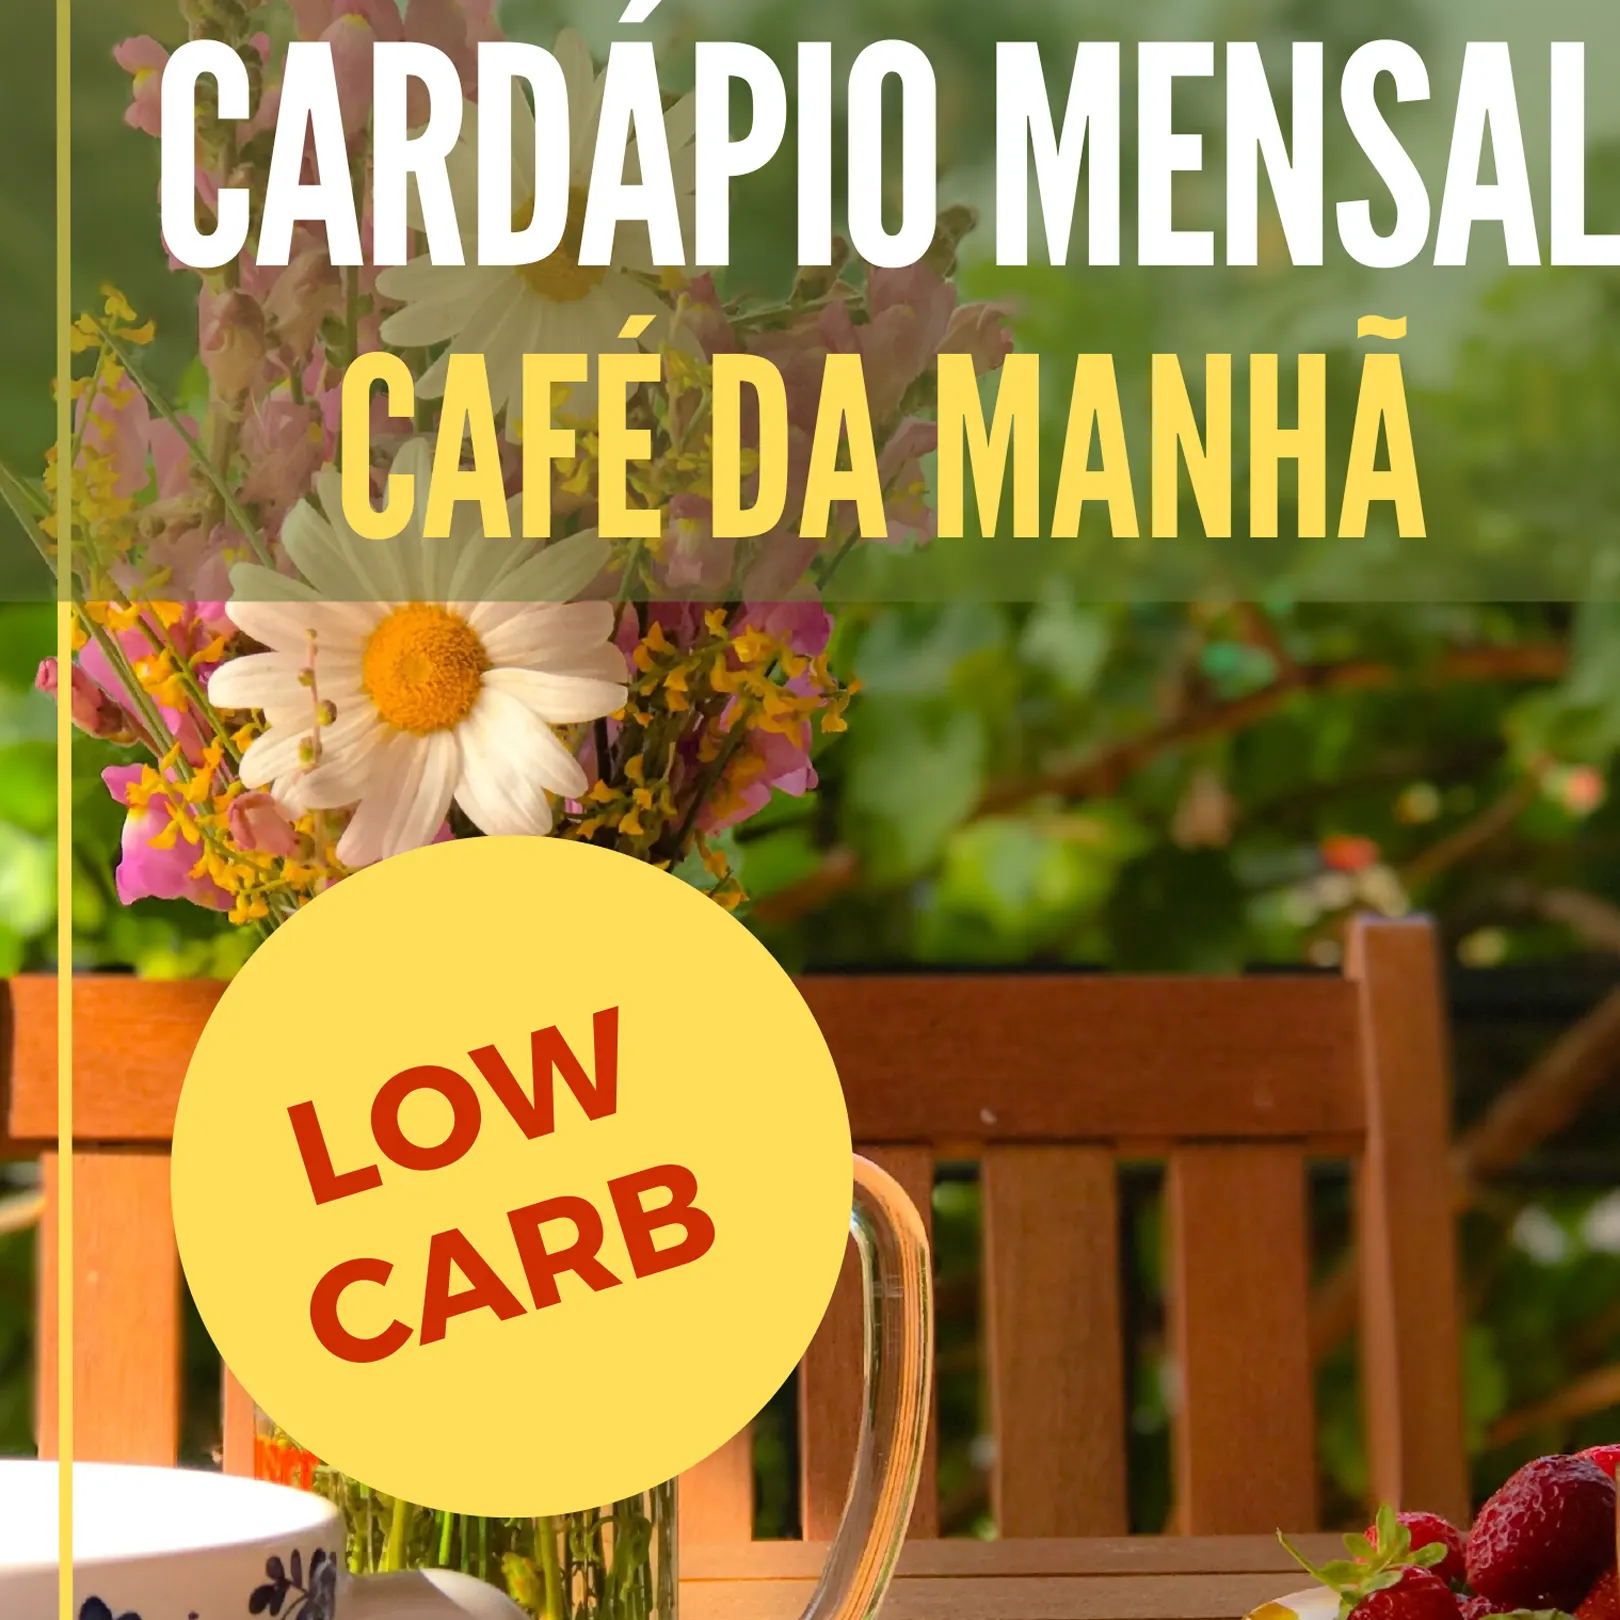 Cardápio Mensal Café da Manhã Low Carb